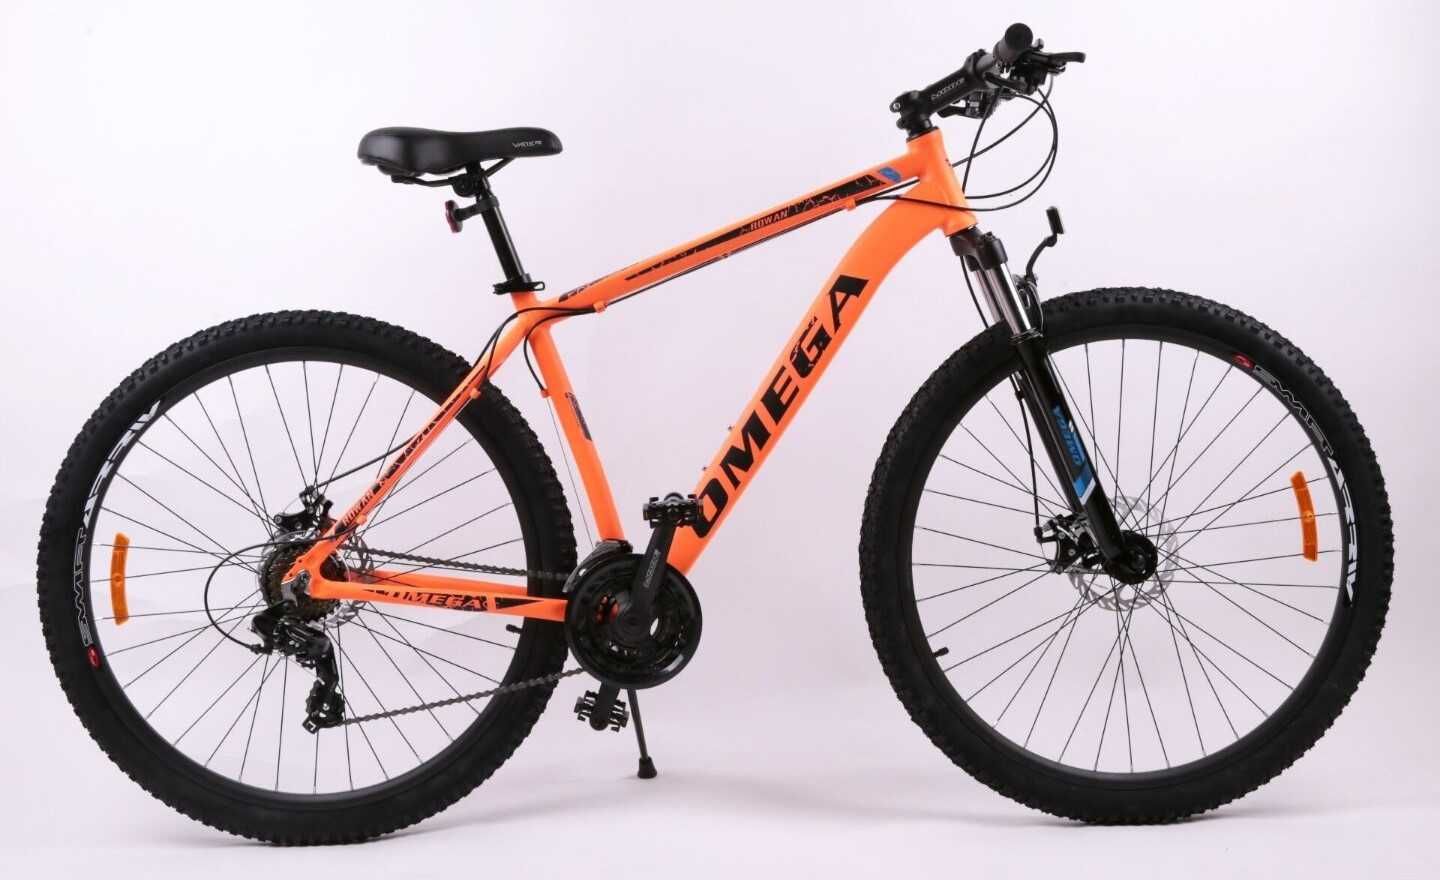 Bicicletă nouă Omega Rowan 26", portocaliu-negru